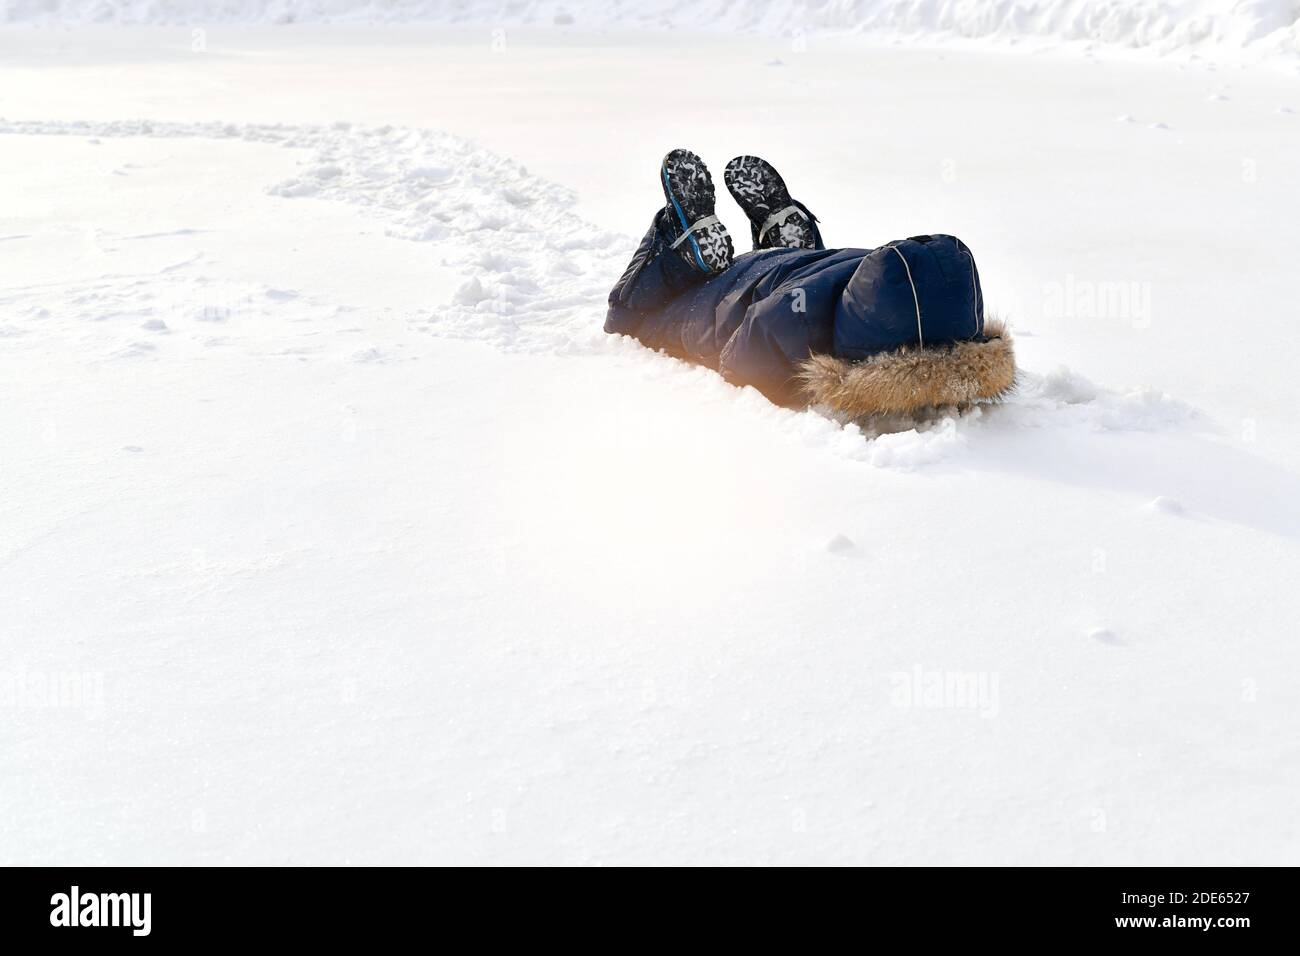 Das Kind spielt im Schnee. Liegen begraben seine Hände und Kopf nach unten, versteckt. An den Füßen stützen die Schuhe die Gurtstifte aus dem Winter-Jumpsuit. Stockfoto